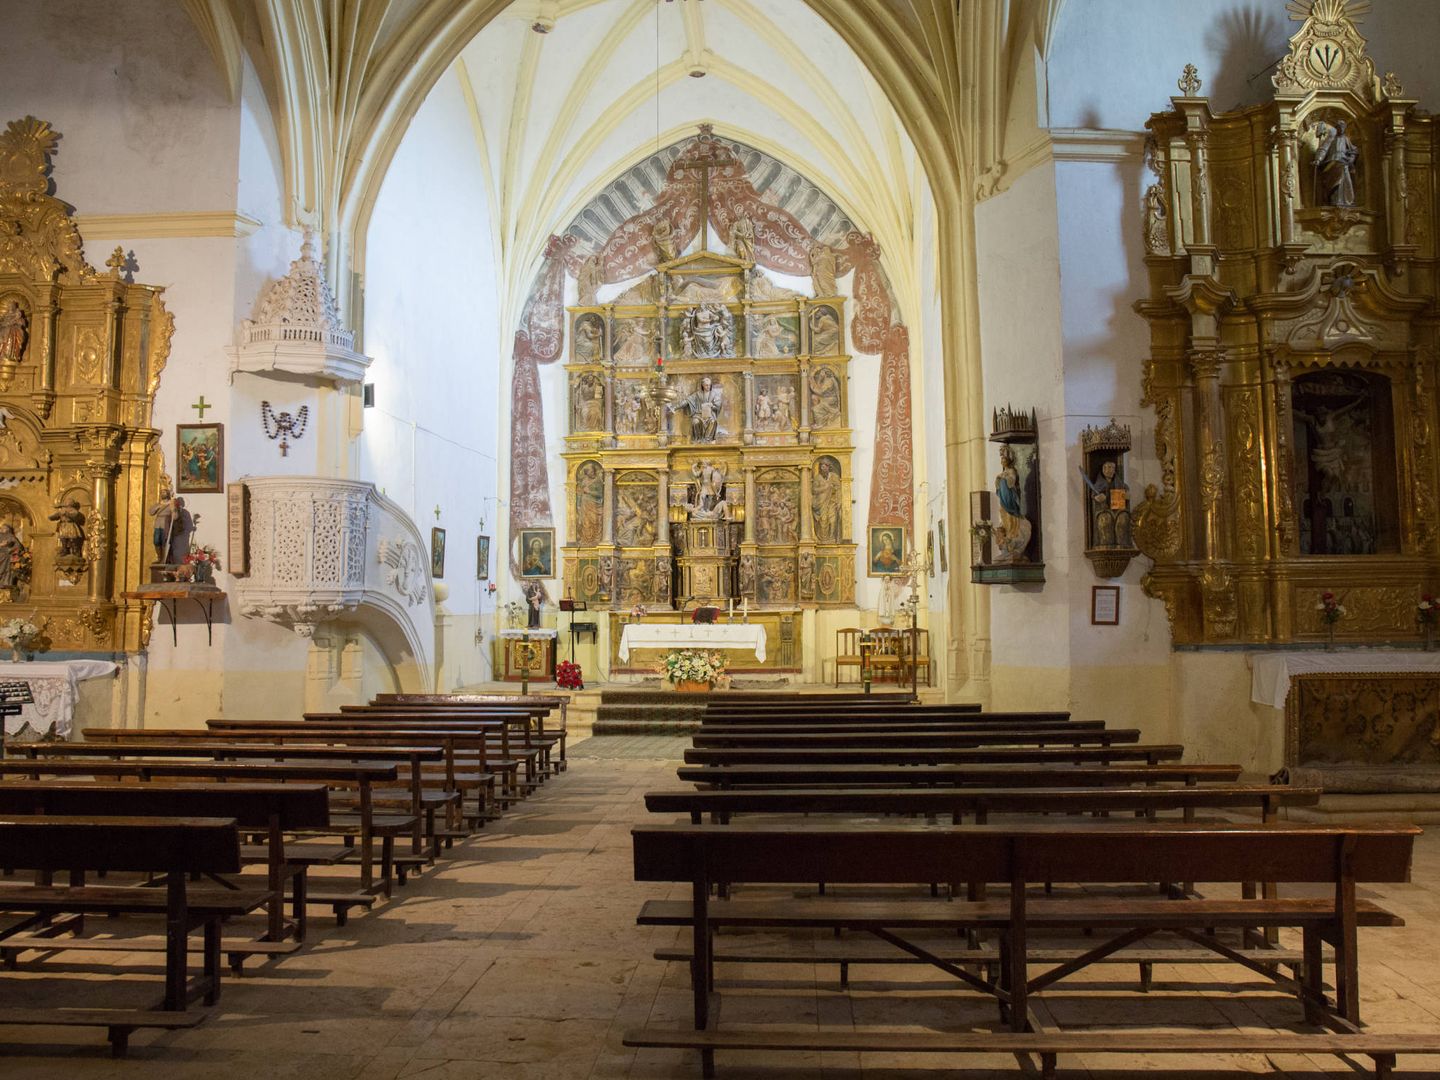 El retablo mayor es la mayor joya artística de Quintanilla de Riofresno. (D. B.)